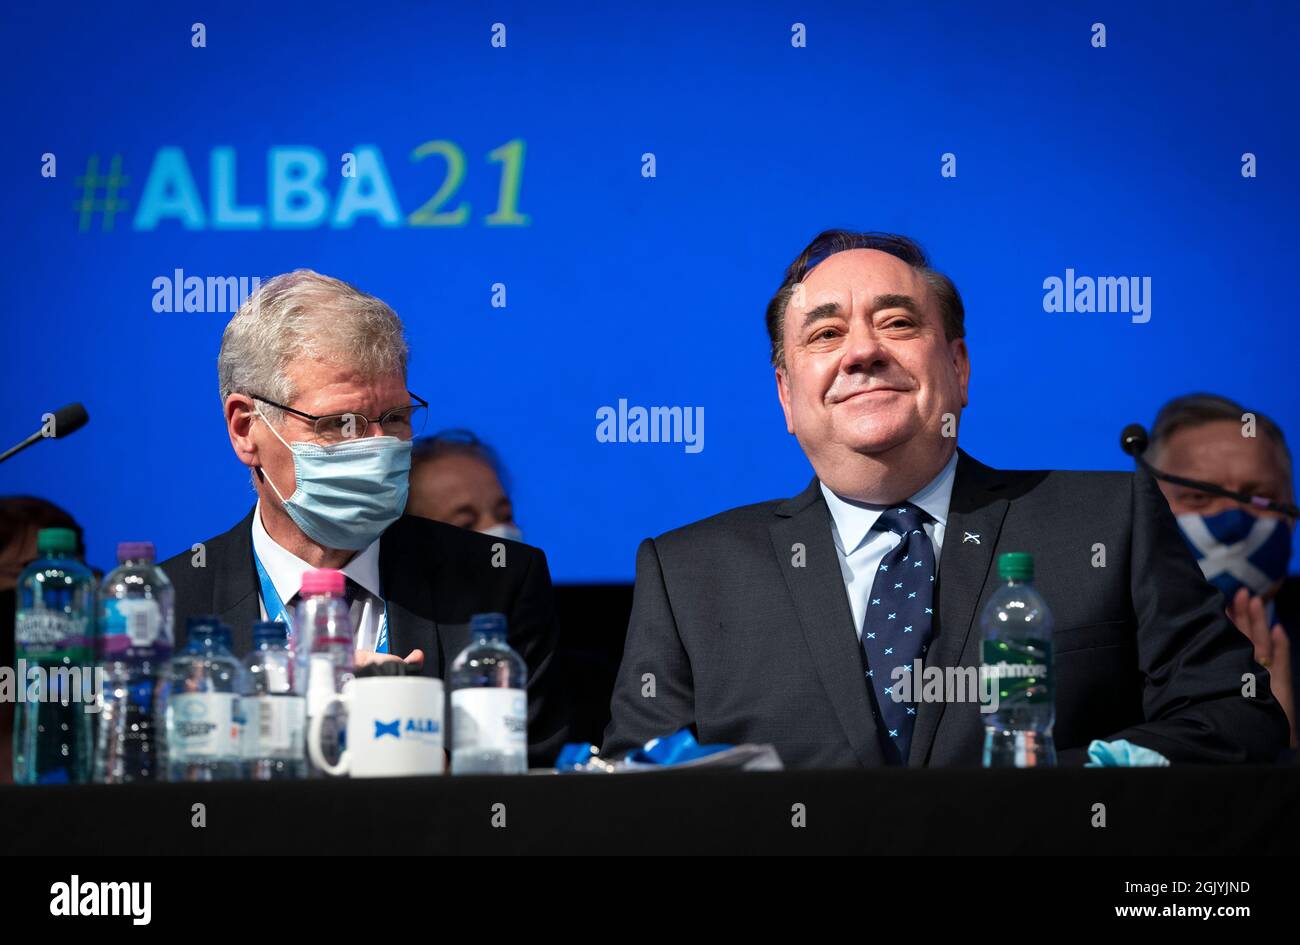 Le chef du parti Alex Salmond avec le chef du quartier Kenny MacAskill (à gauche) lors de la première conférence annuelle du Parti Alba à l'hôtel de ville de Greenock, Greenock, Inverclyde. Date de la photo: Dimanche 12 septembre 2021. Banque D'Images